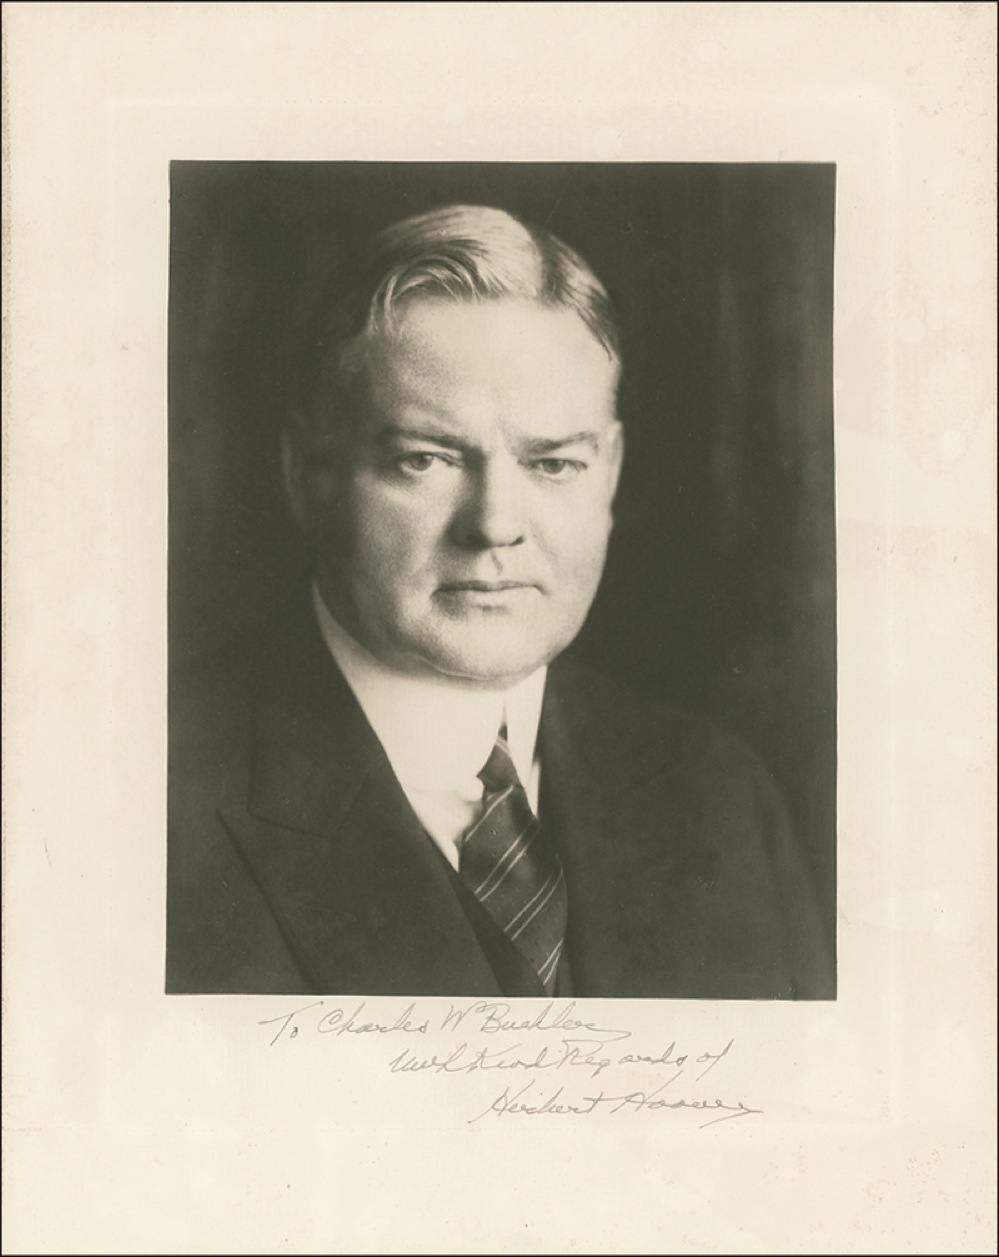 Lot #44 Herbert Hoover